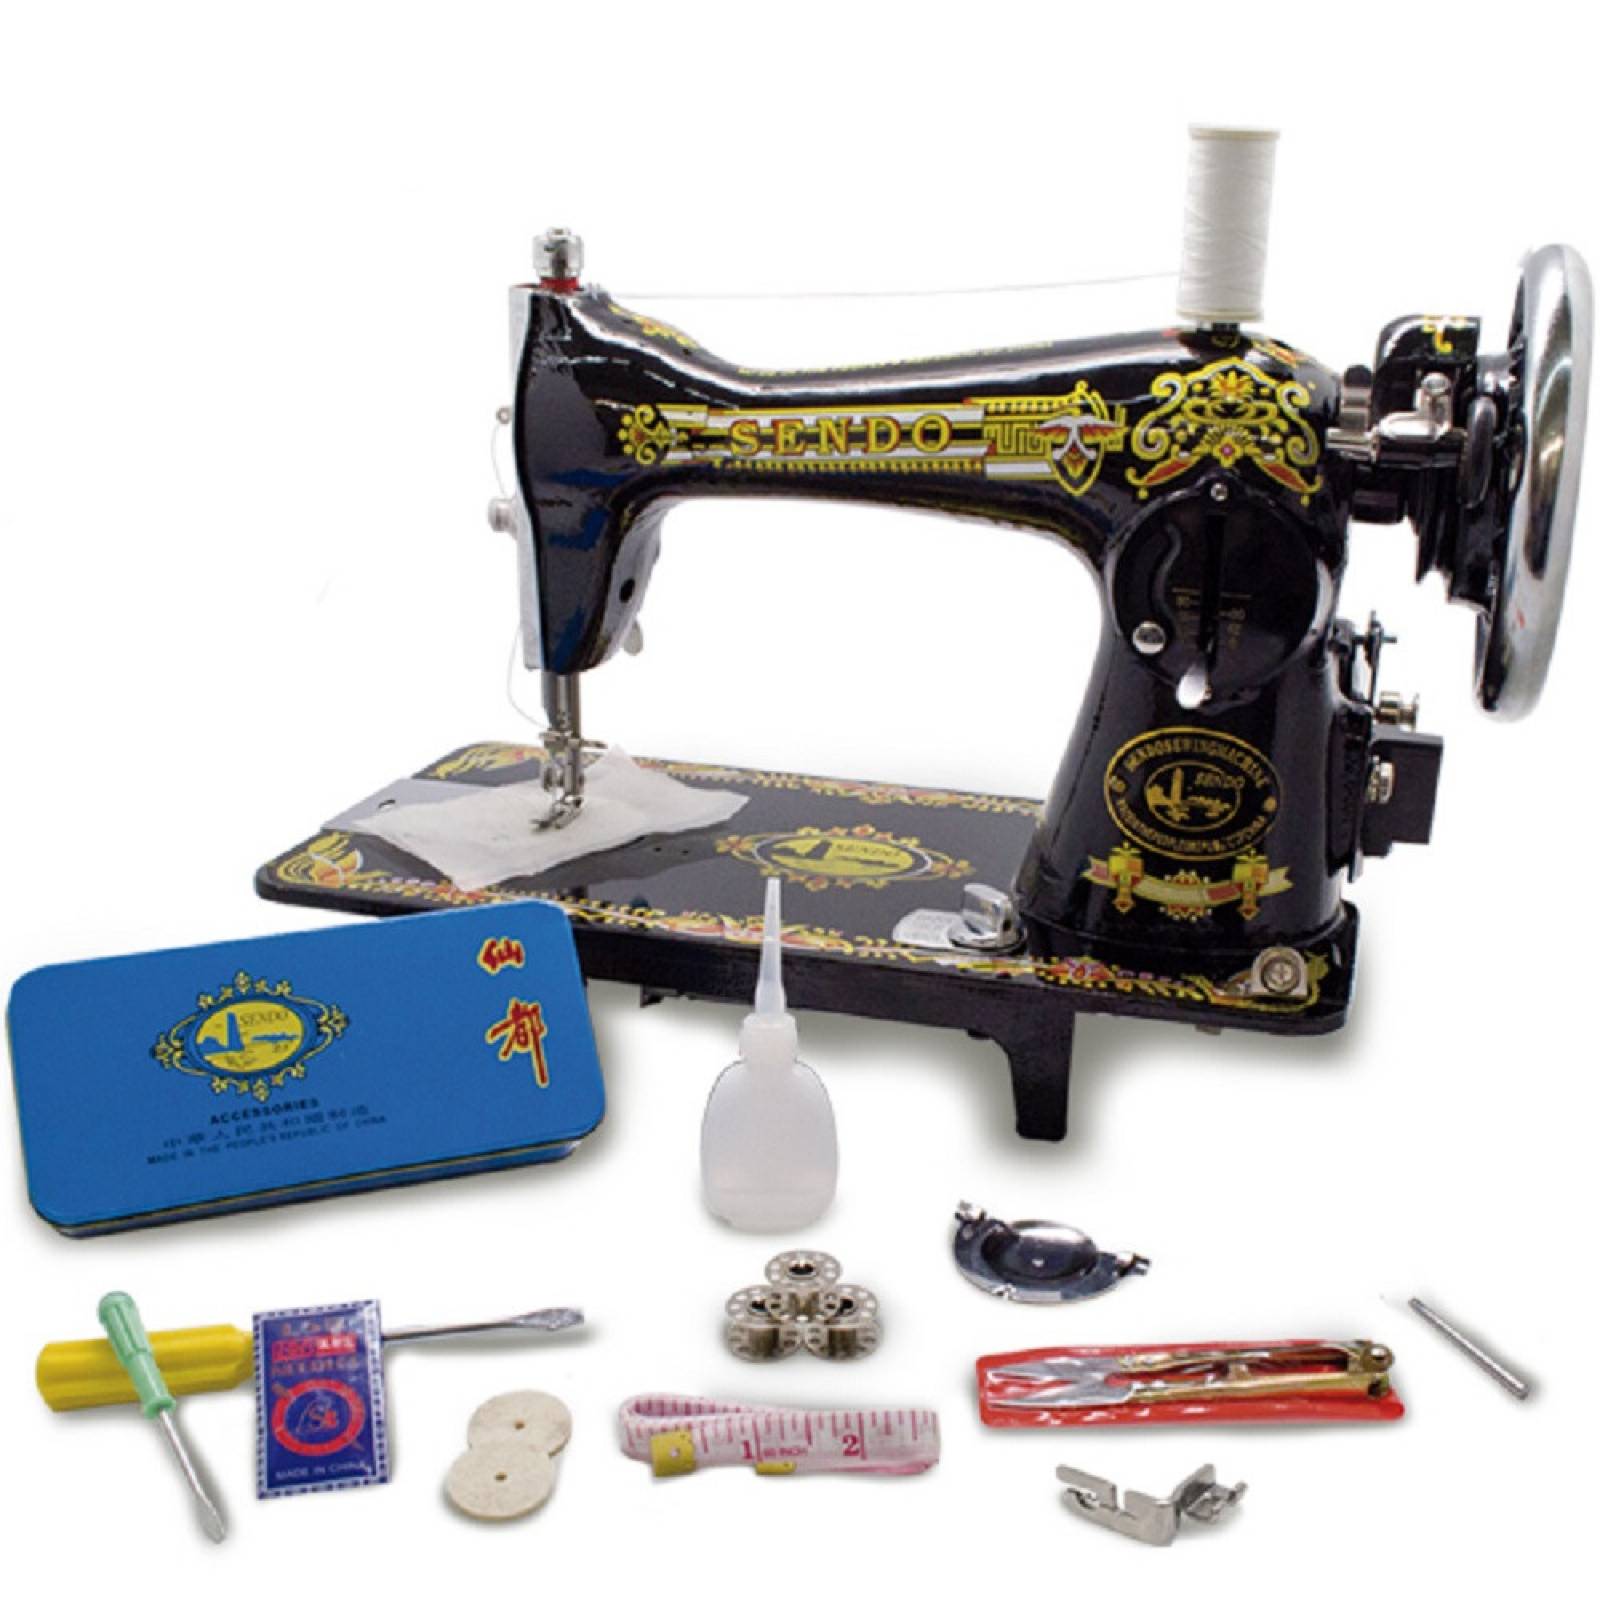 IMÁGENES DE ACCESORIOS DE COSTURA  Accesorios de costura, Maquinas de  coser dibujo, Cubierta para máquina de coser